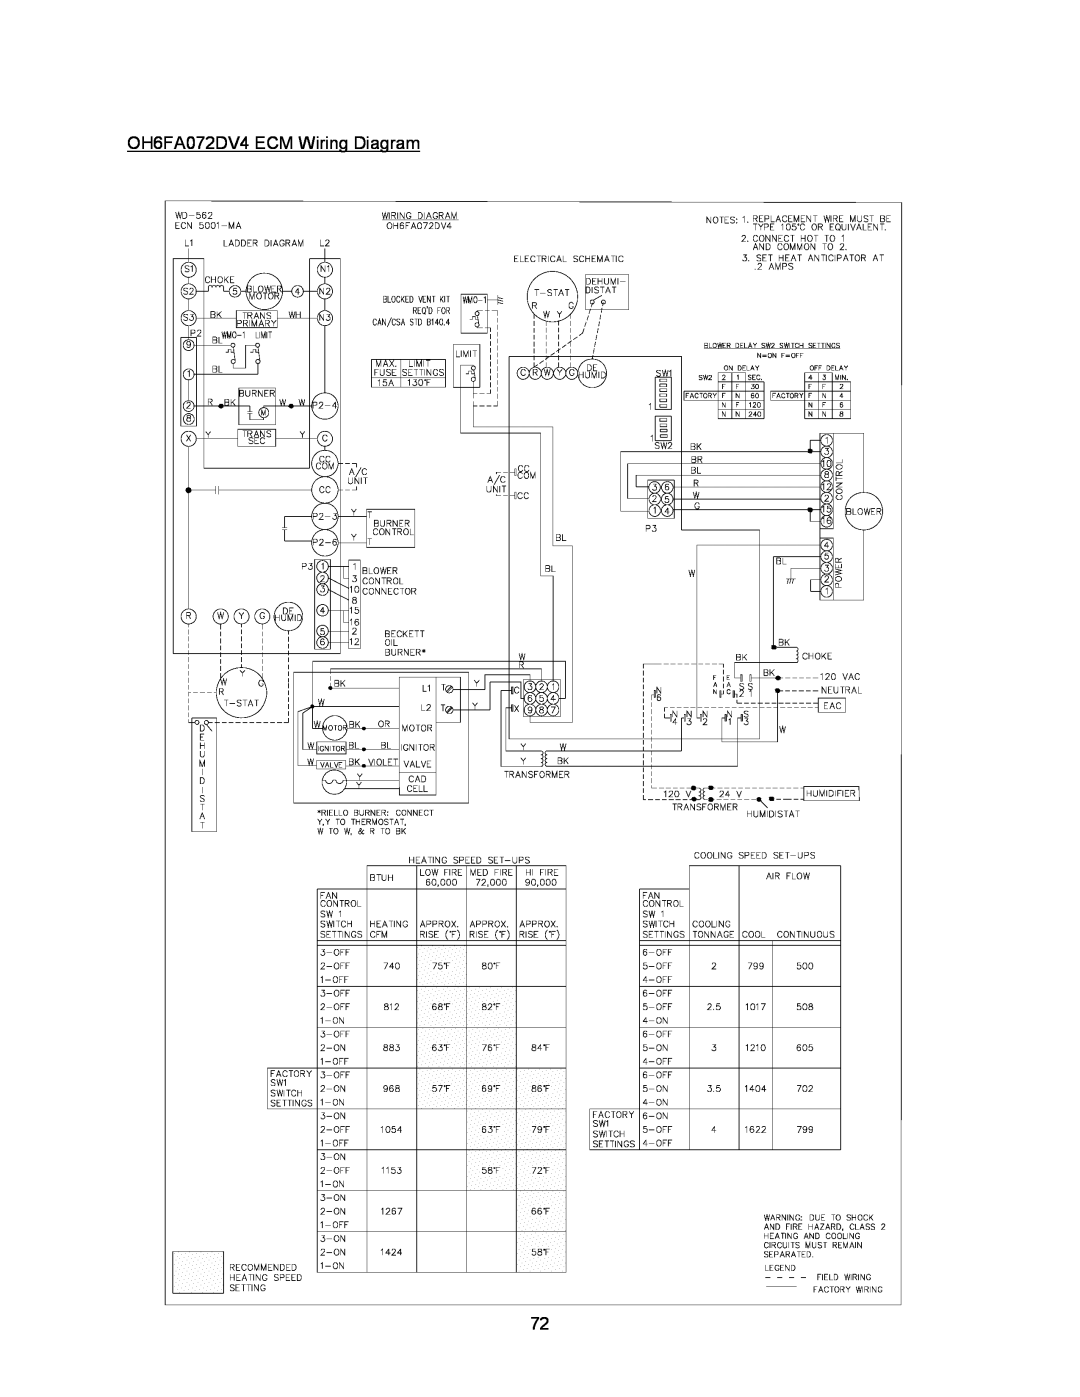 Thermo Products OH8FA119DV5B, OH8FA119DV5R, OH8FA119D60R, OH6FA072D48N, OH6FA072DV4N OH6FA072DV4 ECM Wiring Diagram 